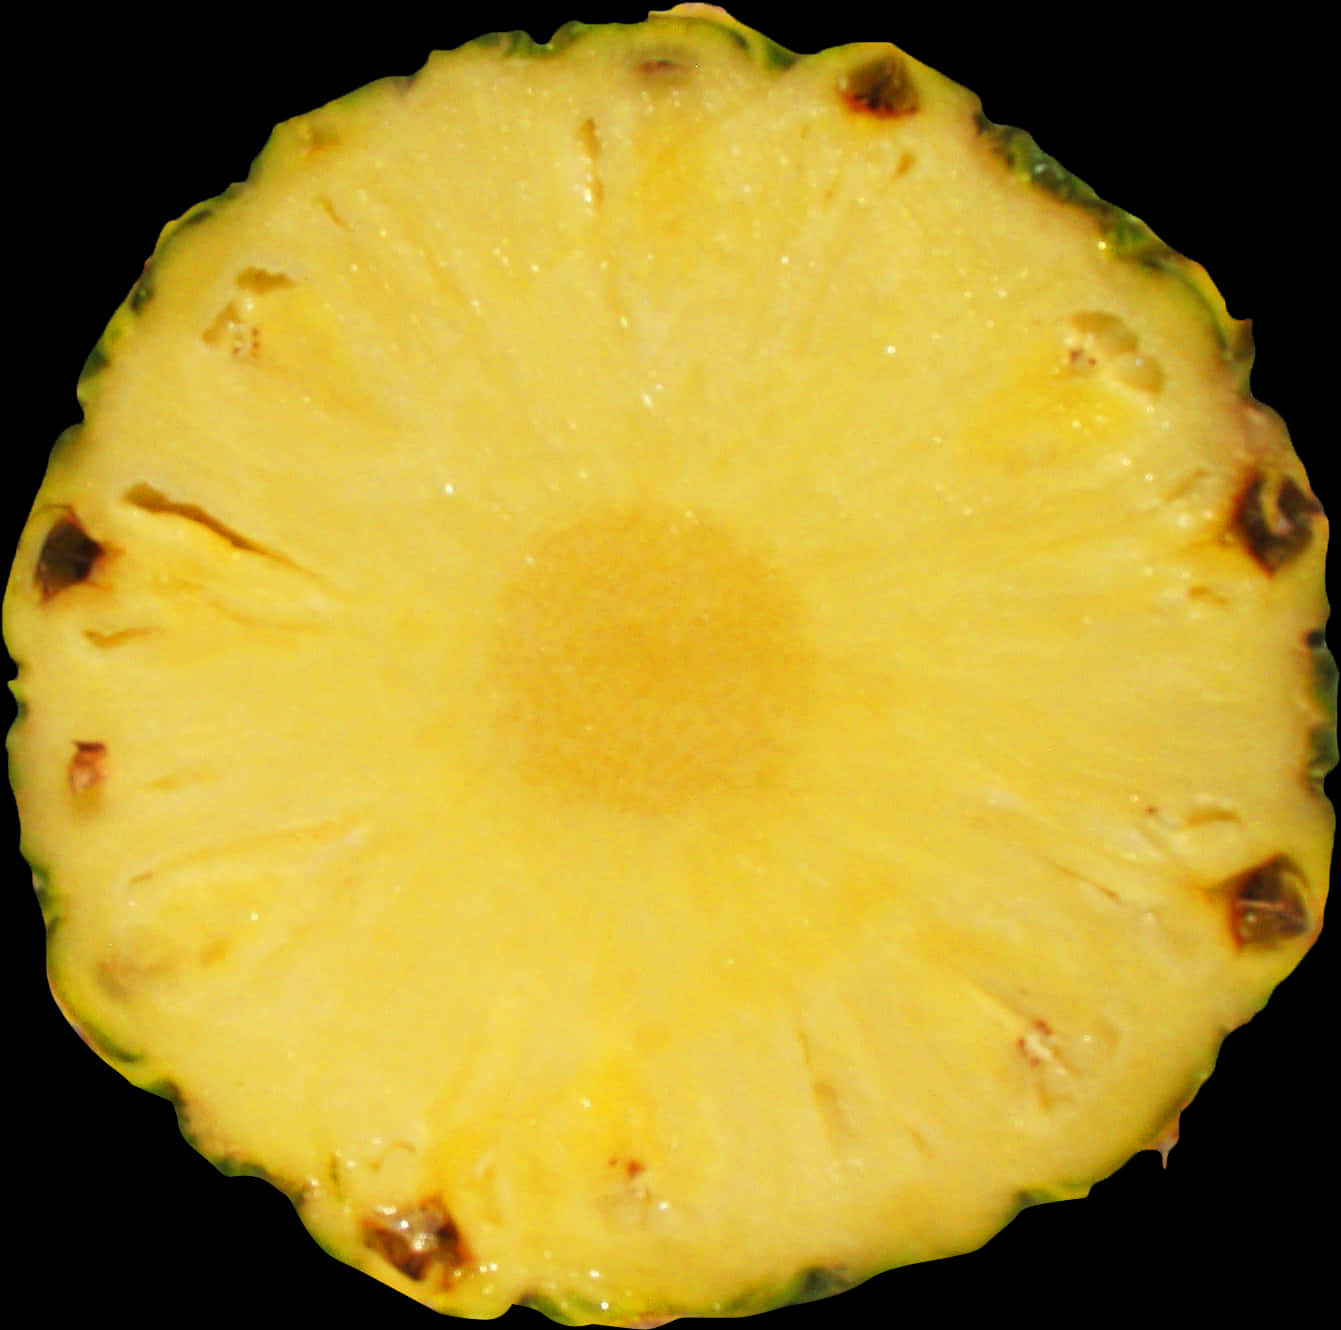 Fresh Pineapple Slice Cross Section.jpg PNG image